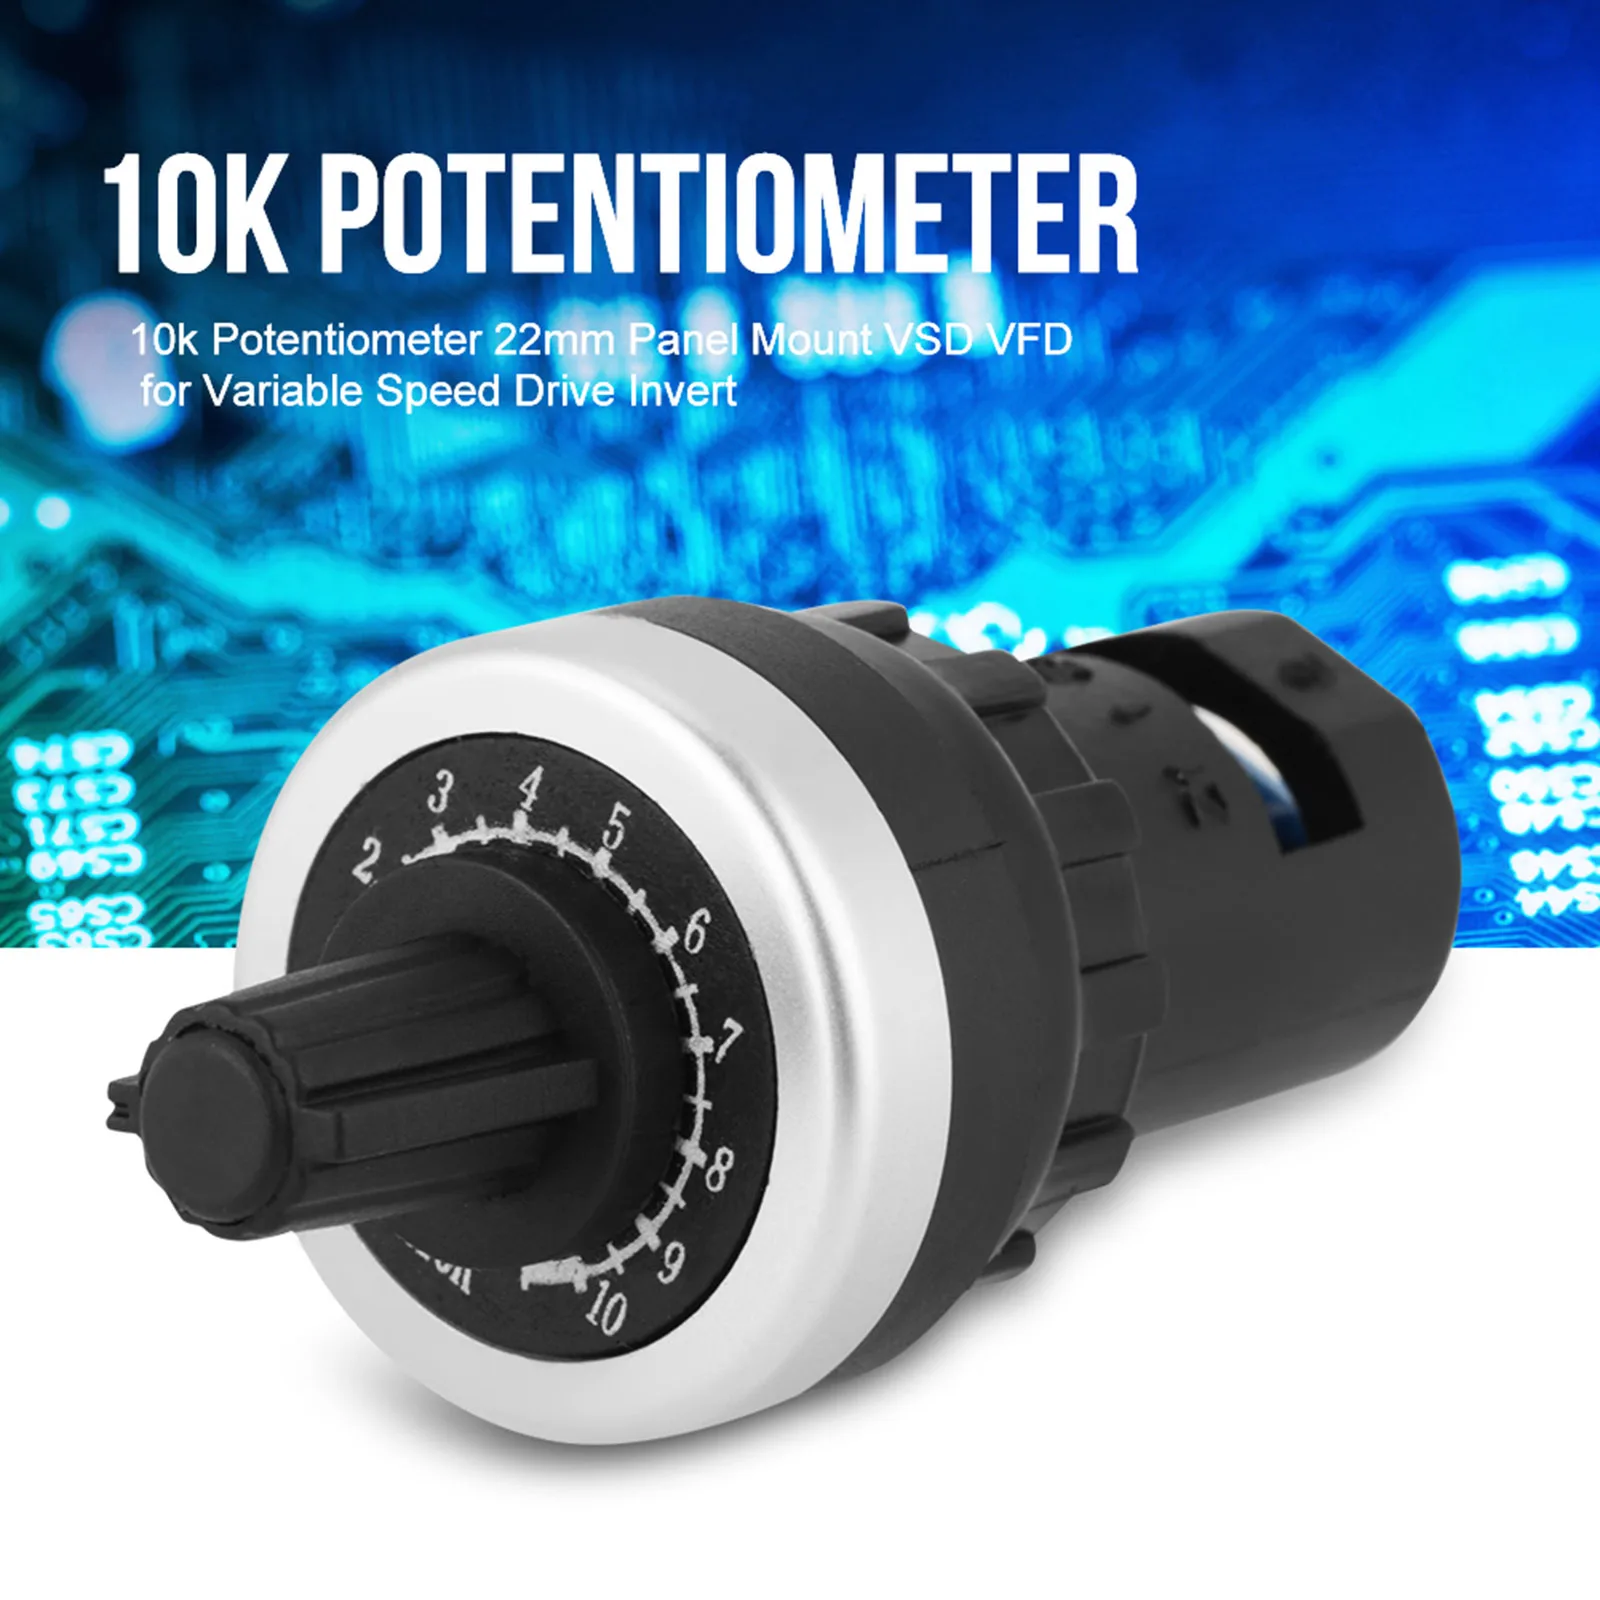 10k potentiometer 22mm panel mount VSD VFD for variable speed drive invert 